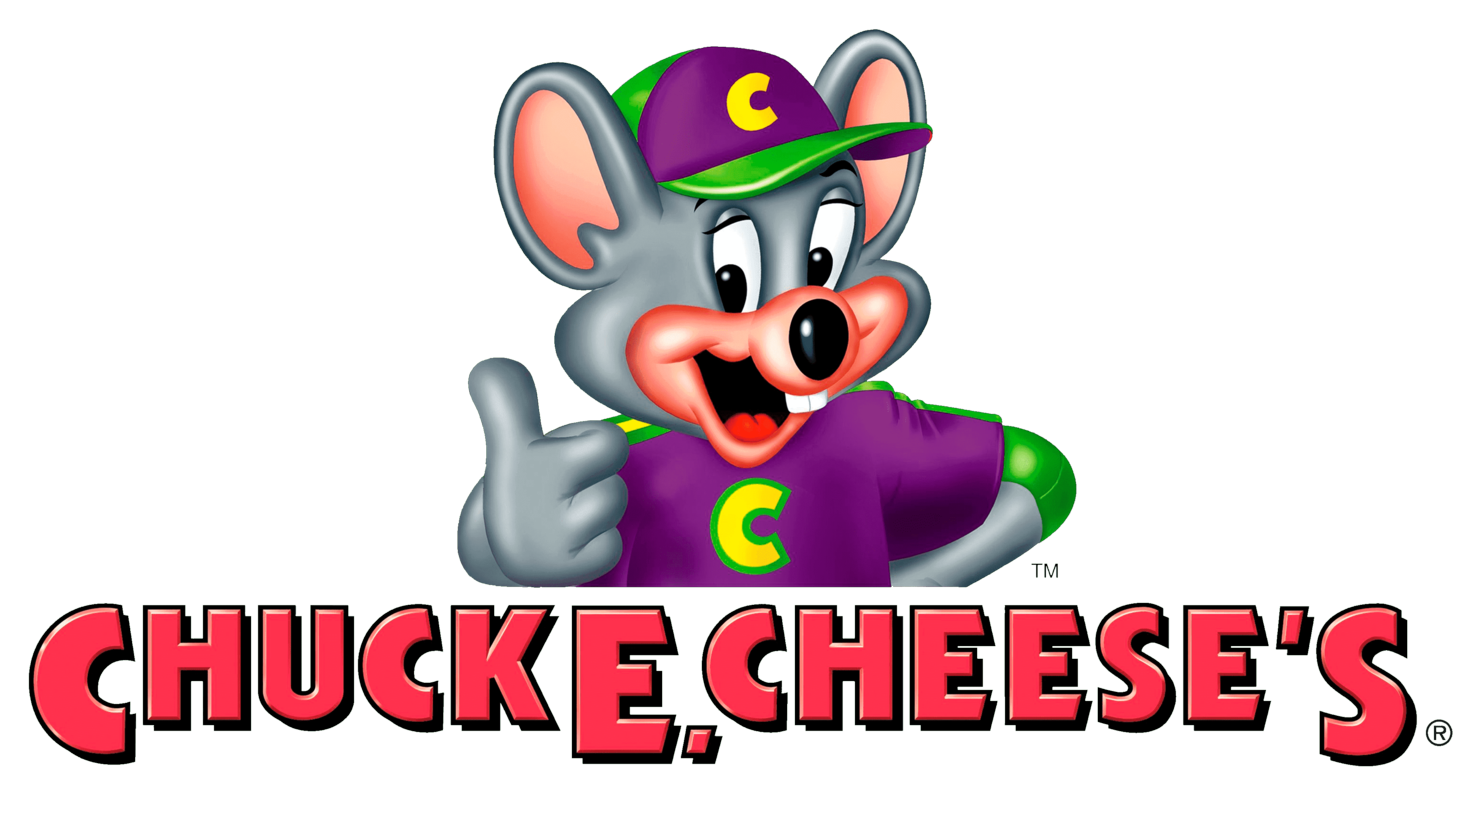 Chuck e. cheeses second era sign 2004 2012